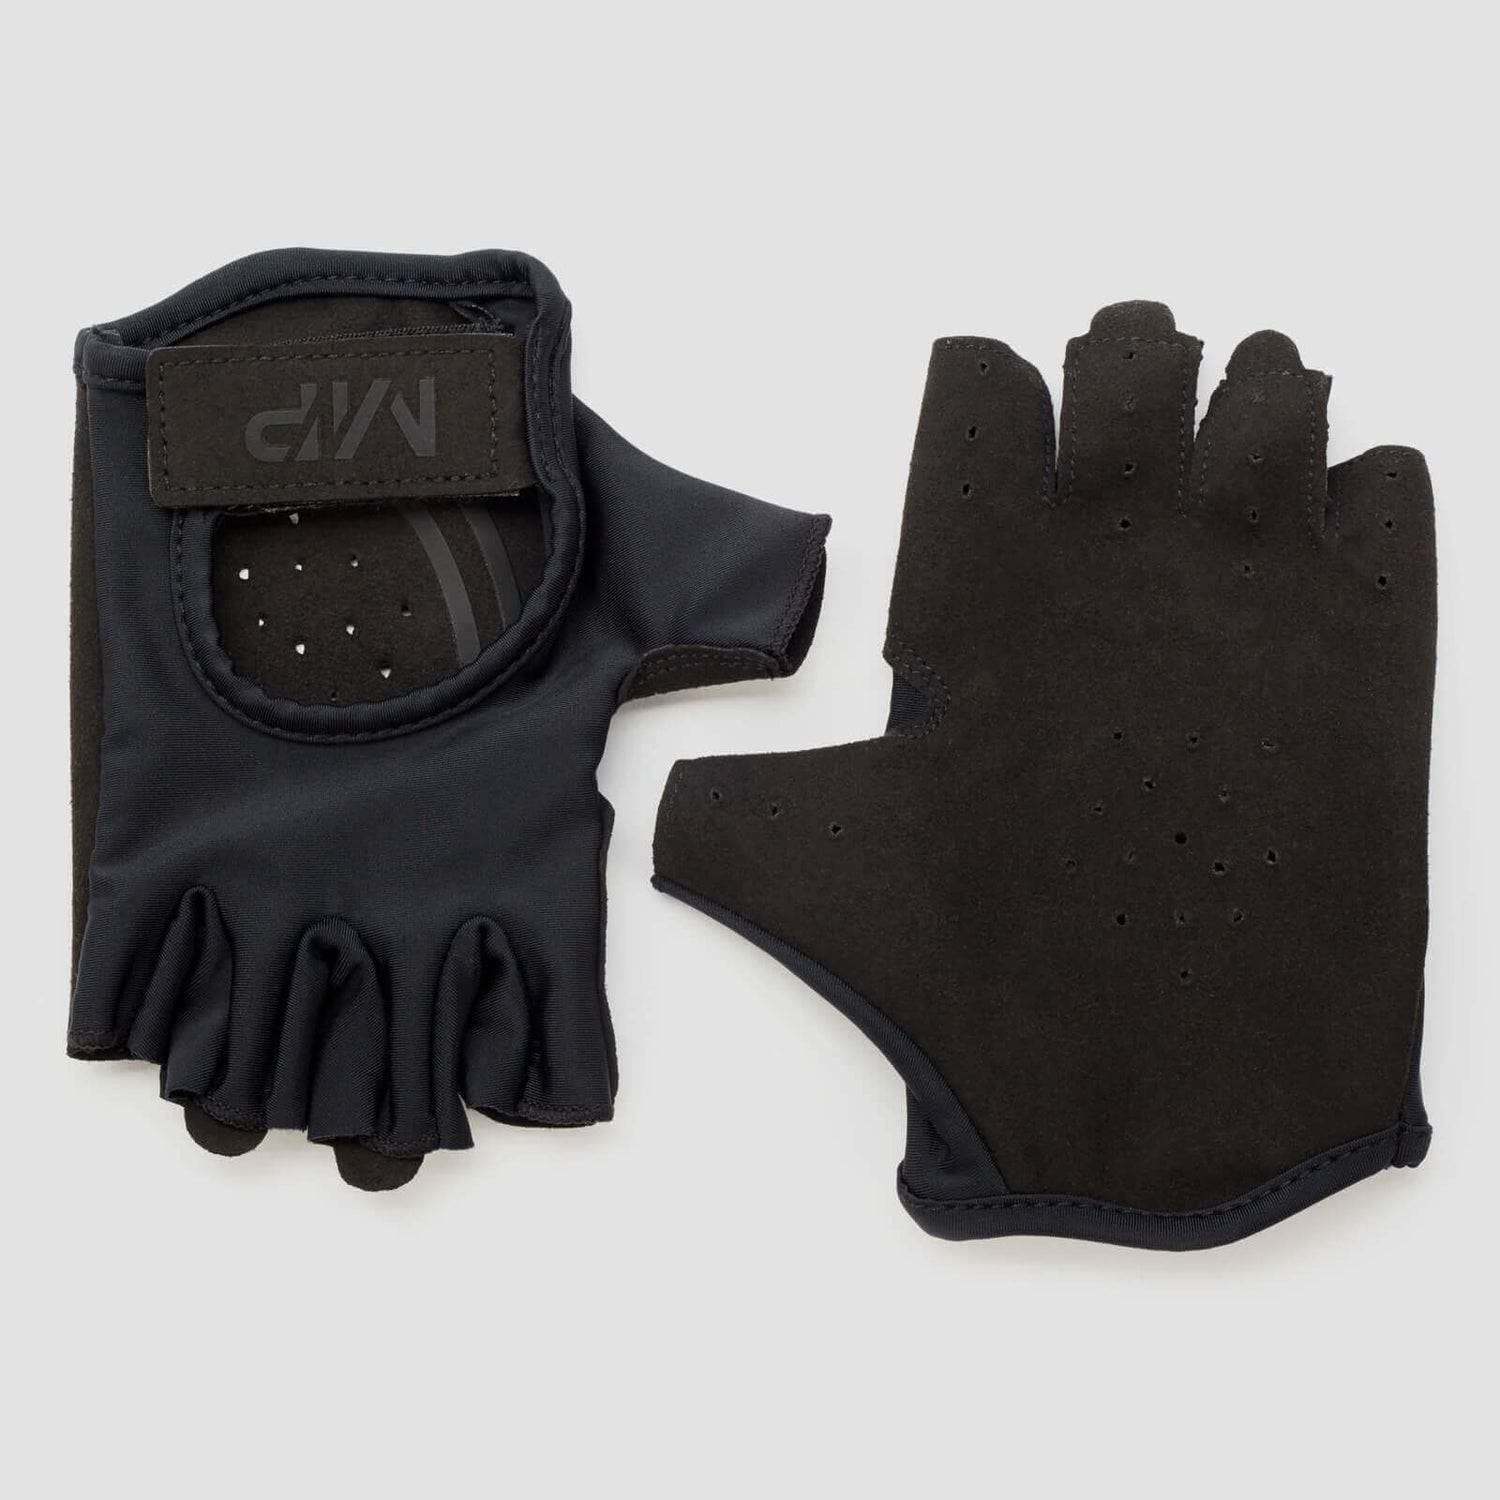 MP Men's Lifting Gloves -käsineet - Musta - M